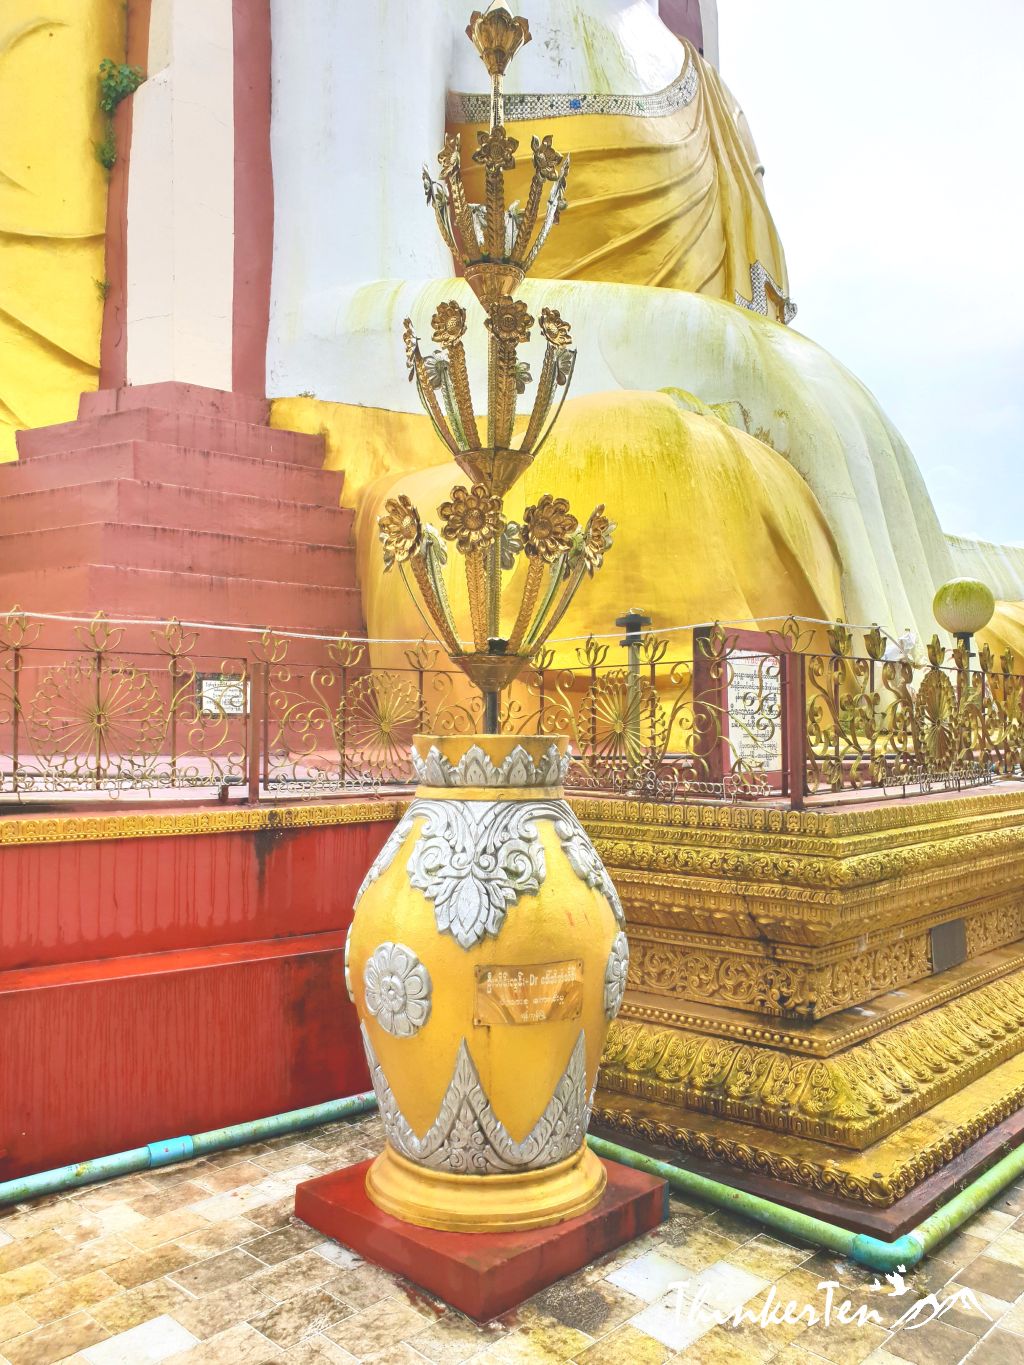 Myanmar Bago : 4 Seated Buddha - Kyaik Pun Pagoda